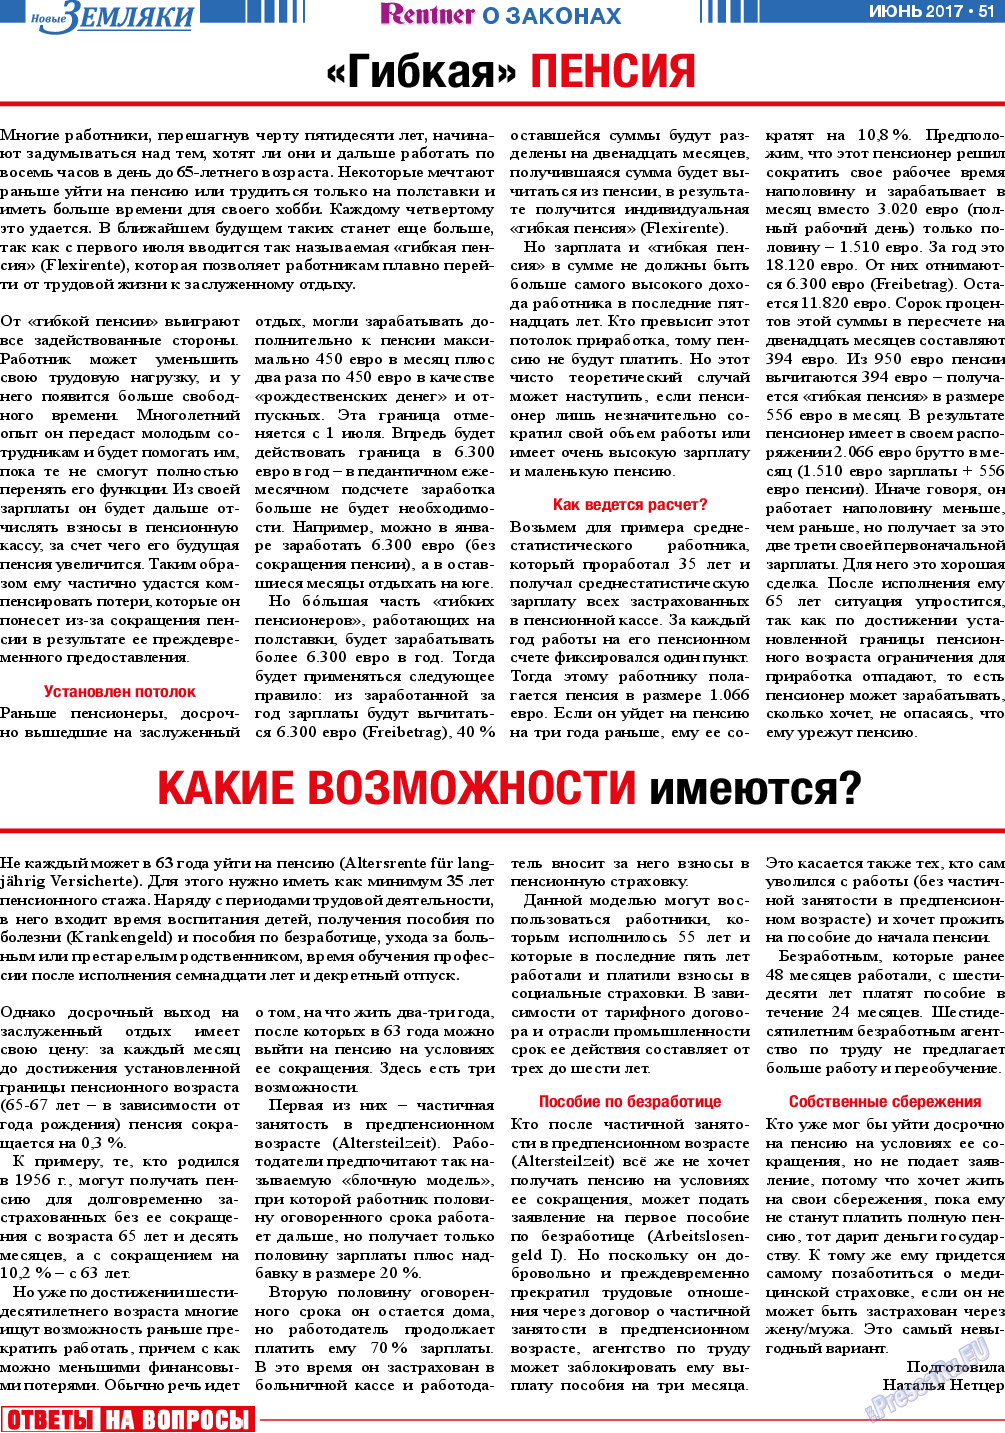 Новые Земляки, газета. 2017 №6 стр.51